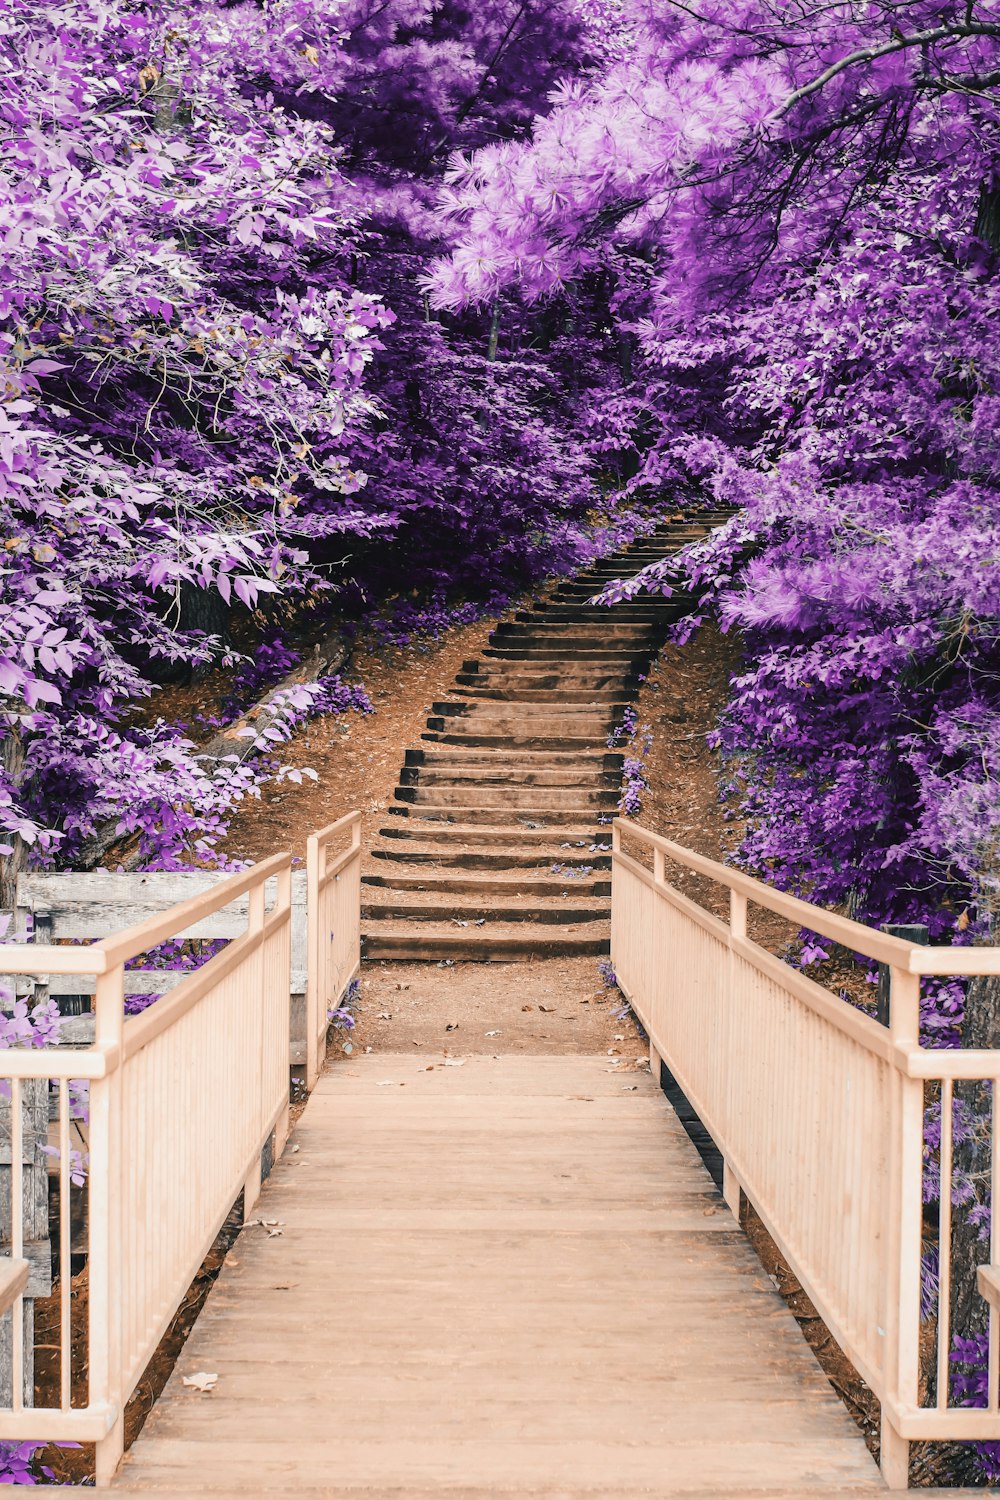 Holzbrücke und Treppe zwischen violetten Bäumen